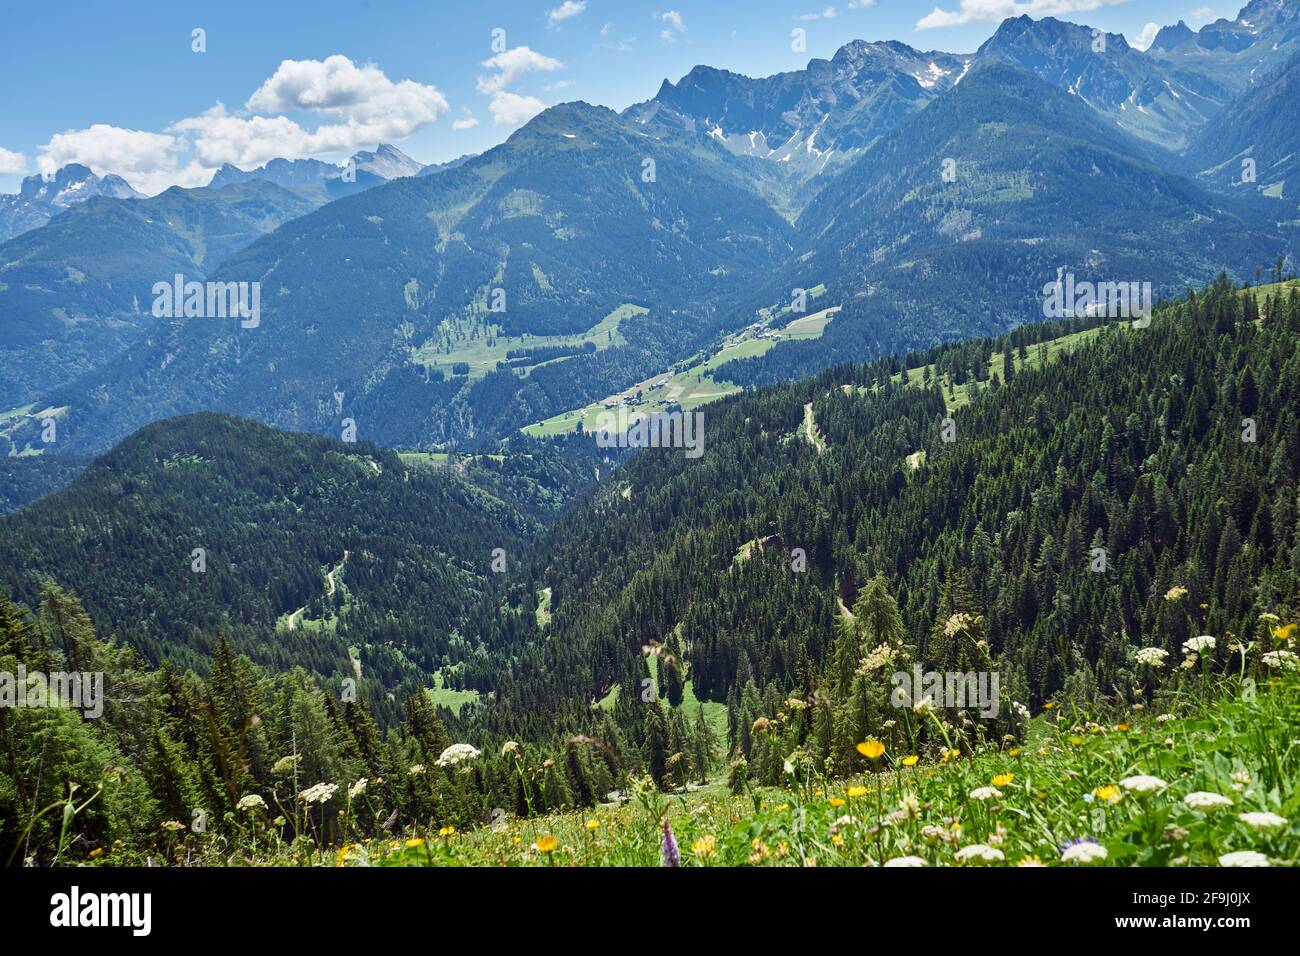 Blumenreiche Bergwiesen am Gailtaler Höhenweg, Gailtaler Alpen, Lesachtal, hinten die Karnischen Alpen, Alpen, Kärnten, Österreich Stock Photo